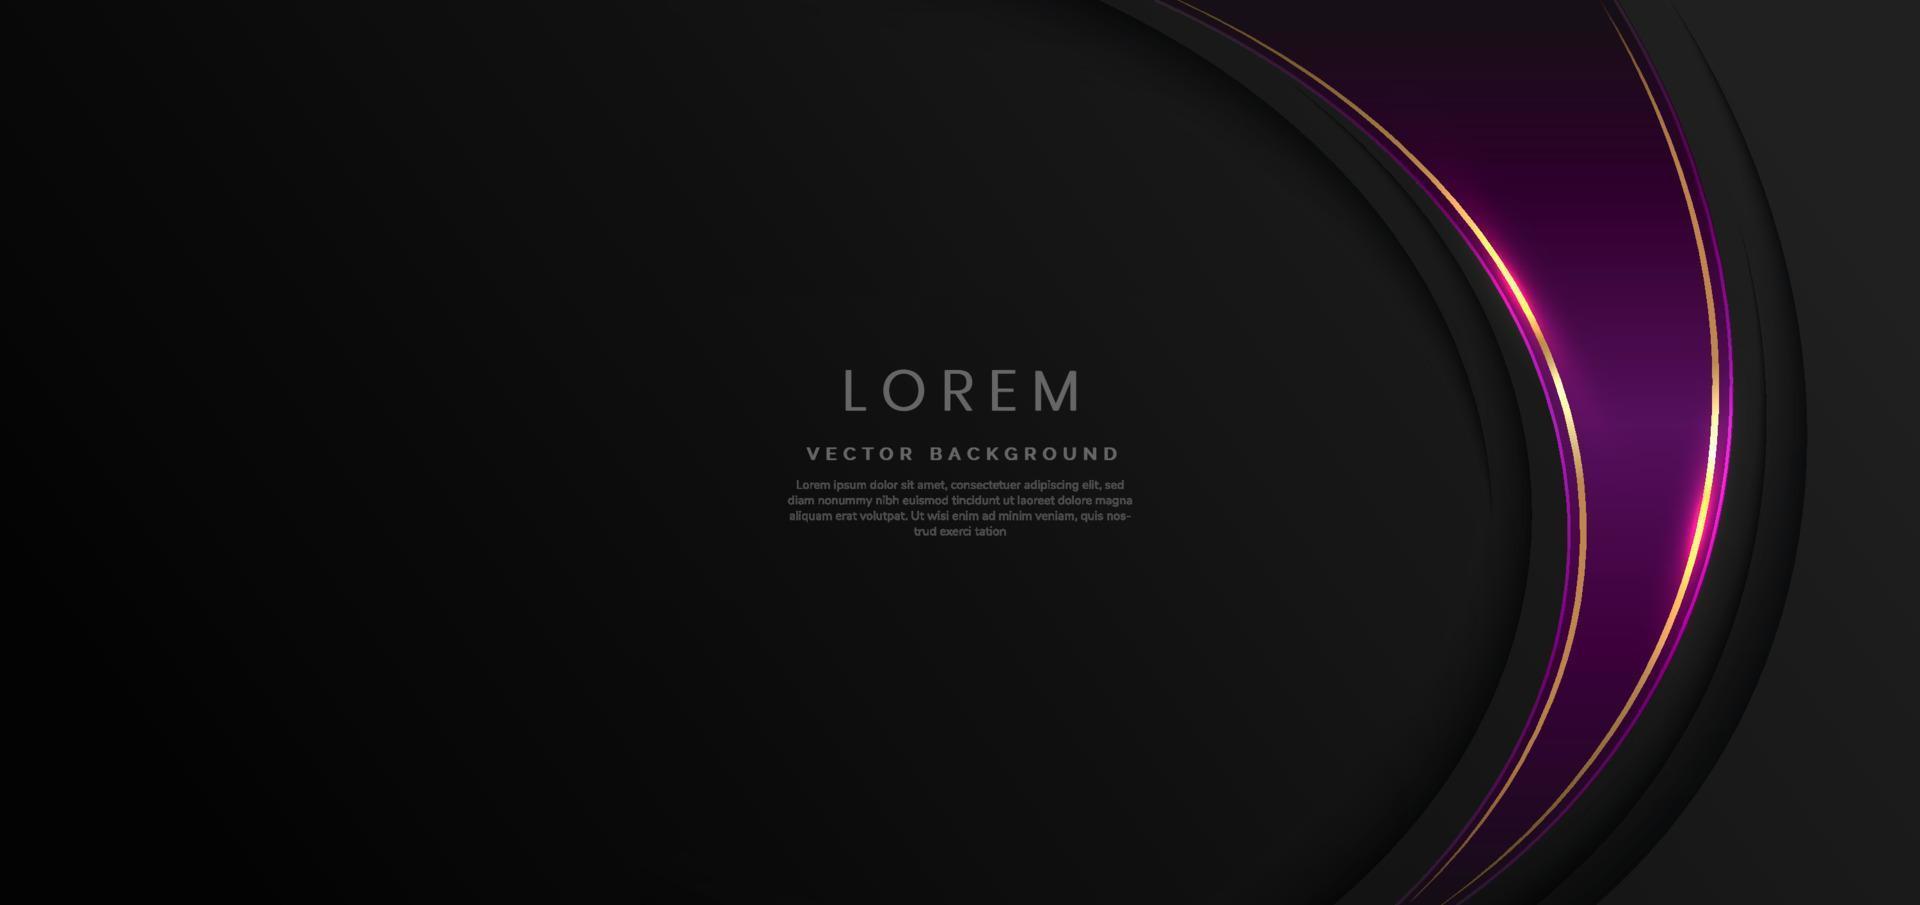 curvas violetas de lujo abstractas con un elegante borde dorado en el espacio de fondo negro para el texto. estilo de diseño de plantilla. vector